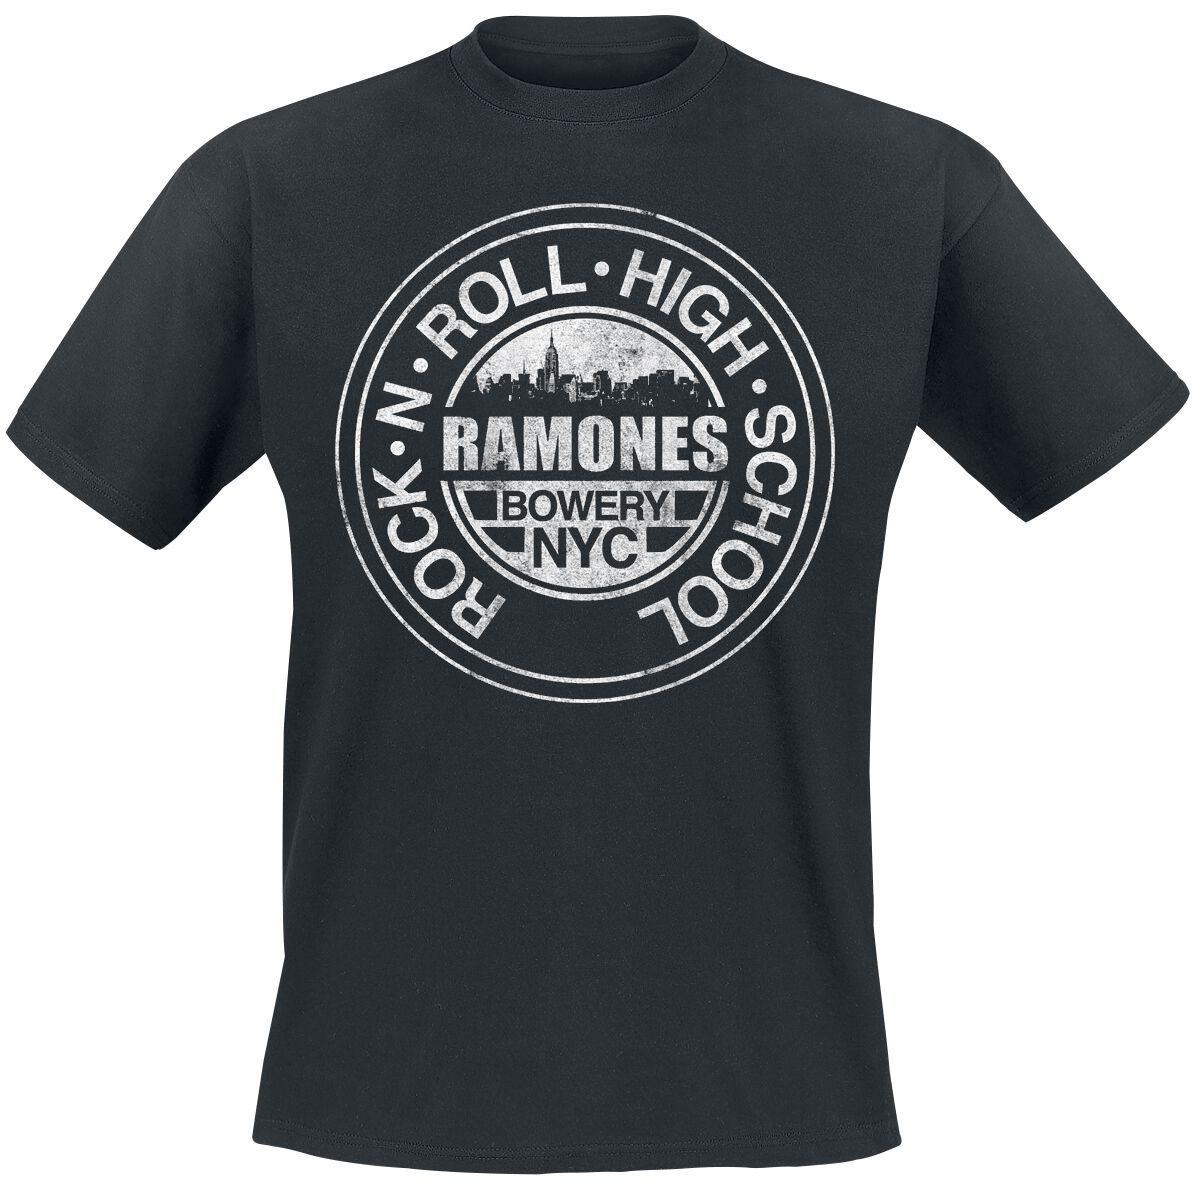 Ramones T-Shirt - Bowery NYC - L bis 5XL - für Männer - Größe 4XL - schwarz  - Lizenziertes Merchandise!